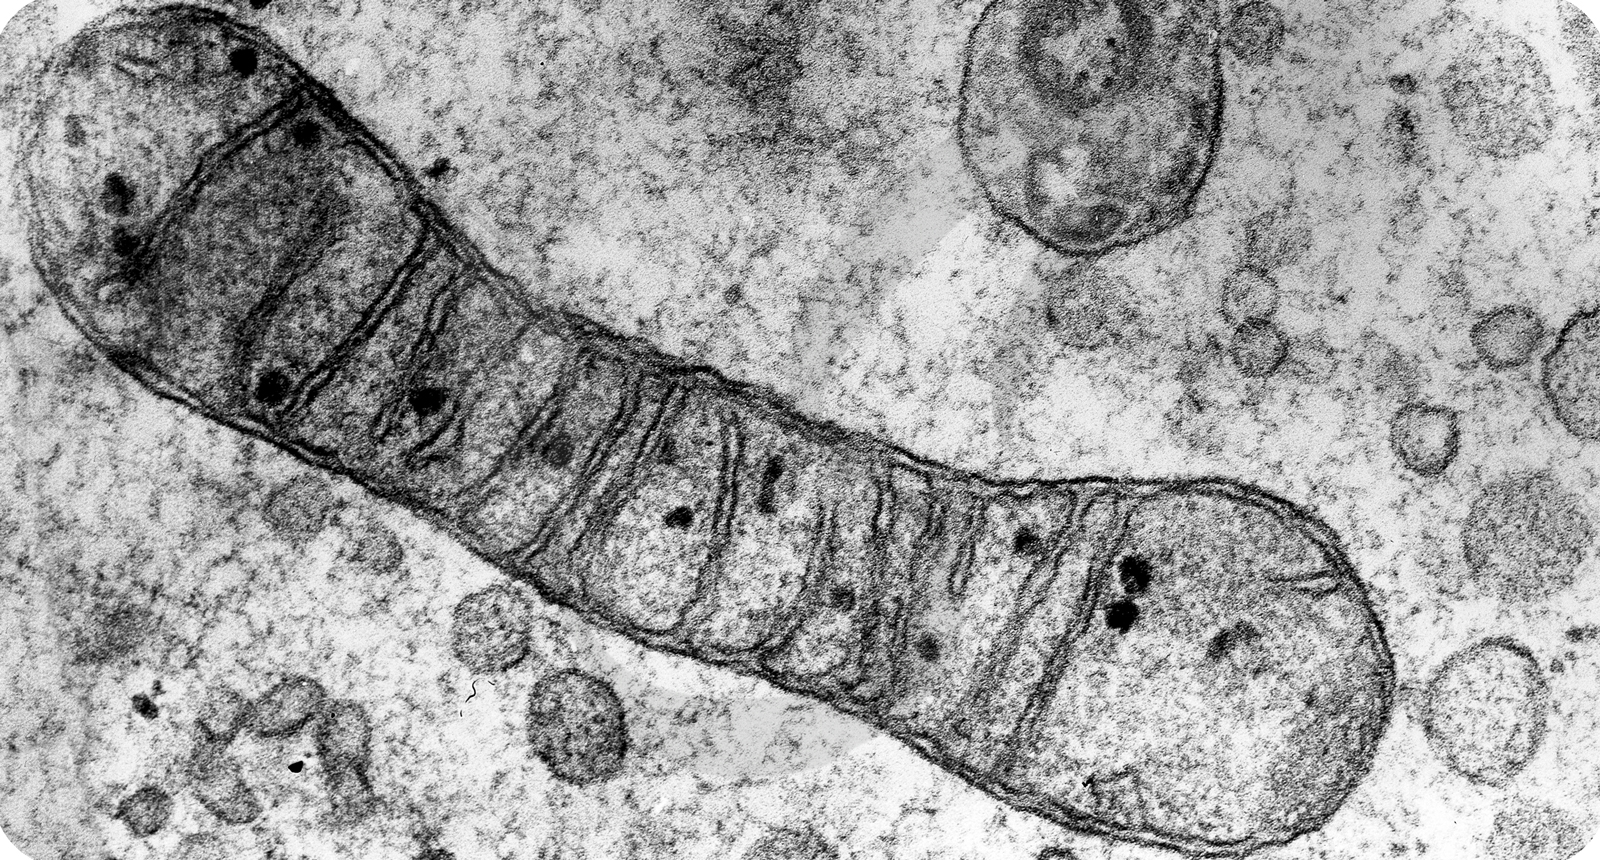 Просвечивающая электронная микрофотография митохондрии в клетке эмбриона цыпленка